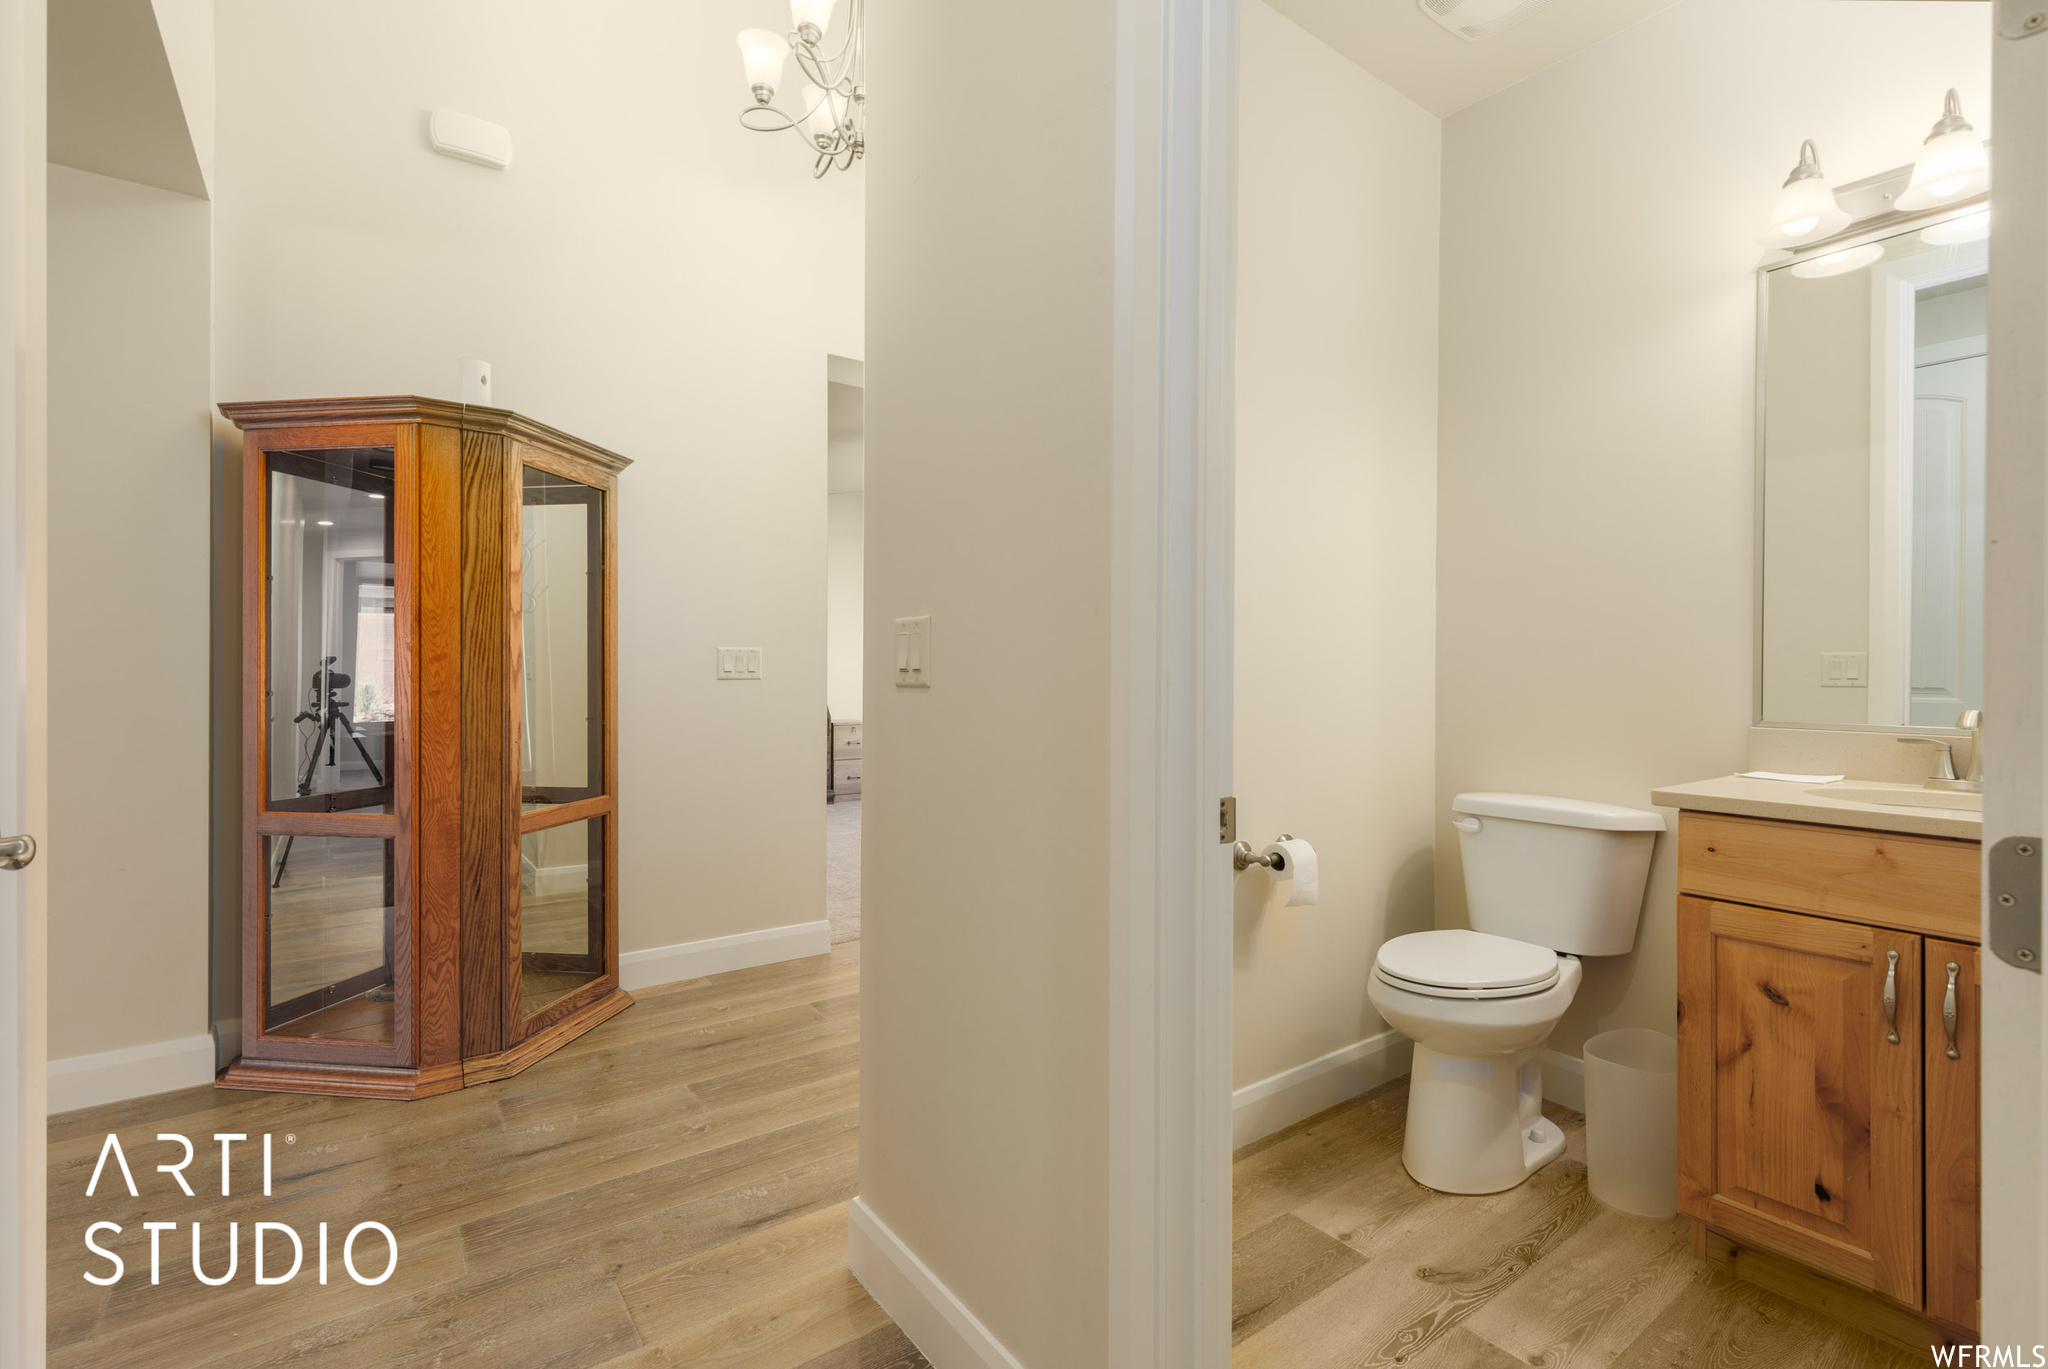 Bathroom with vanity, mirror, and light engineered wood floors